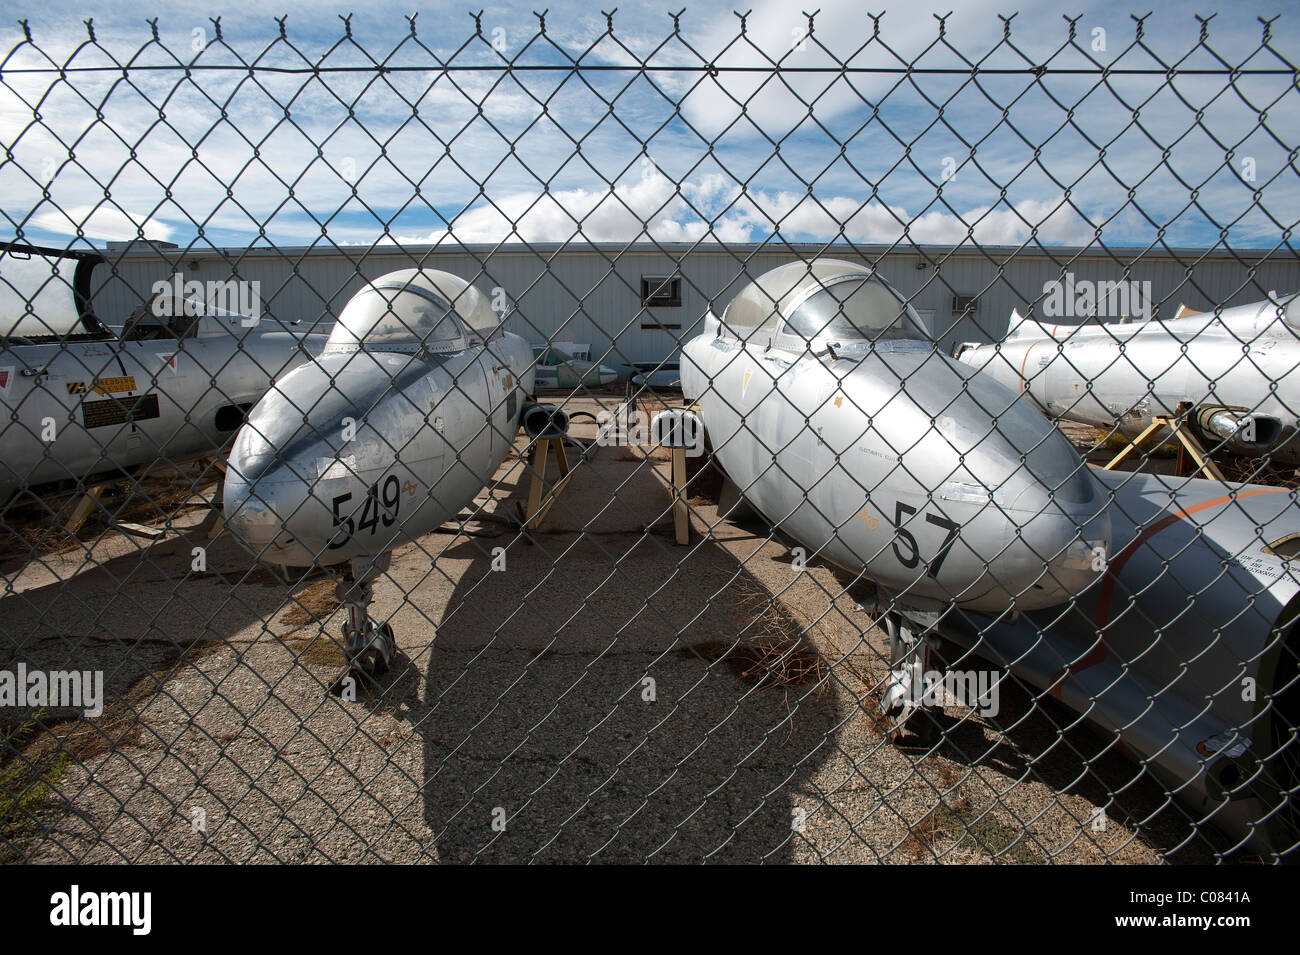 Avions désaffecté à l'Astroport de Mojave à Mojave, Californie, USA. Banque D'Images